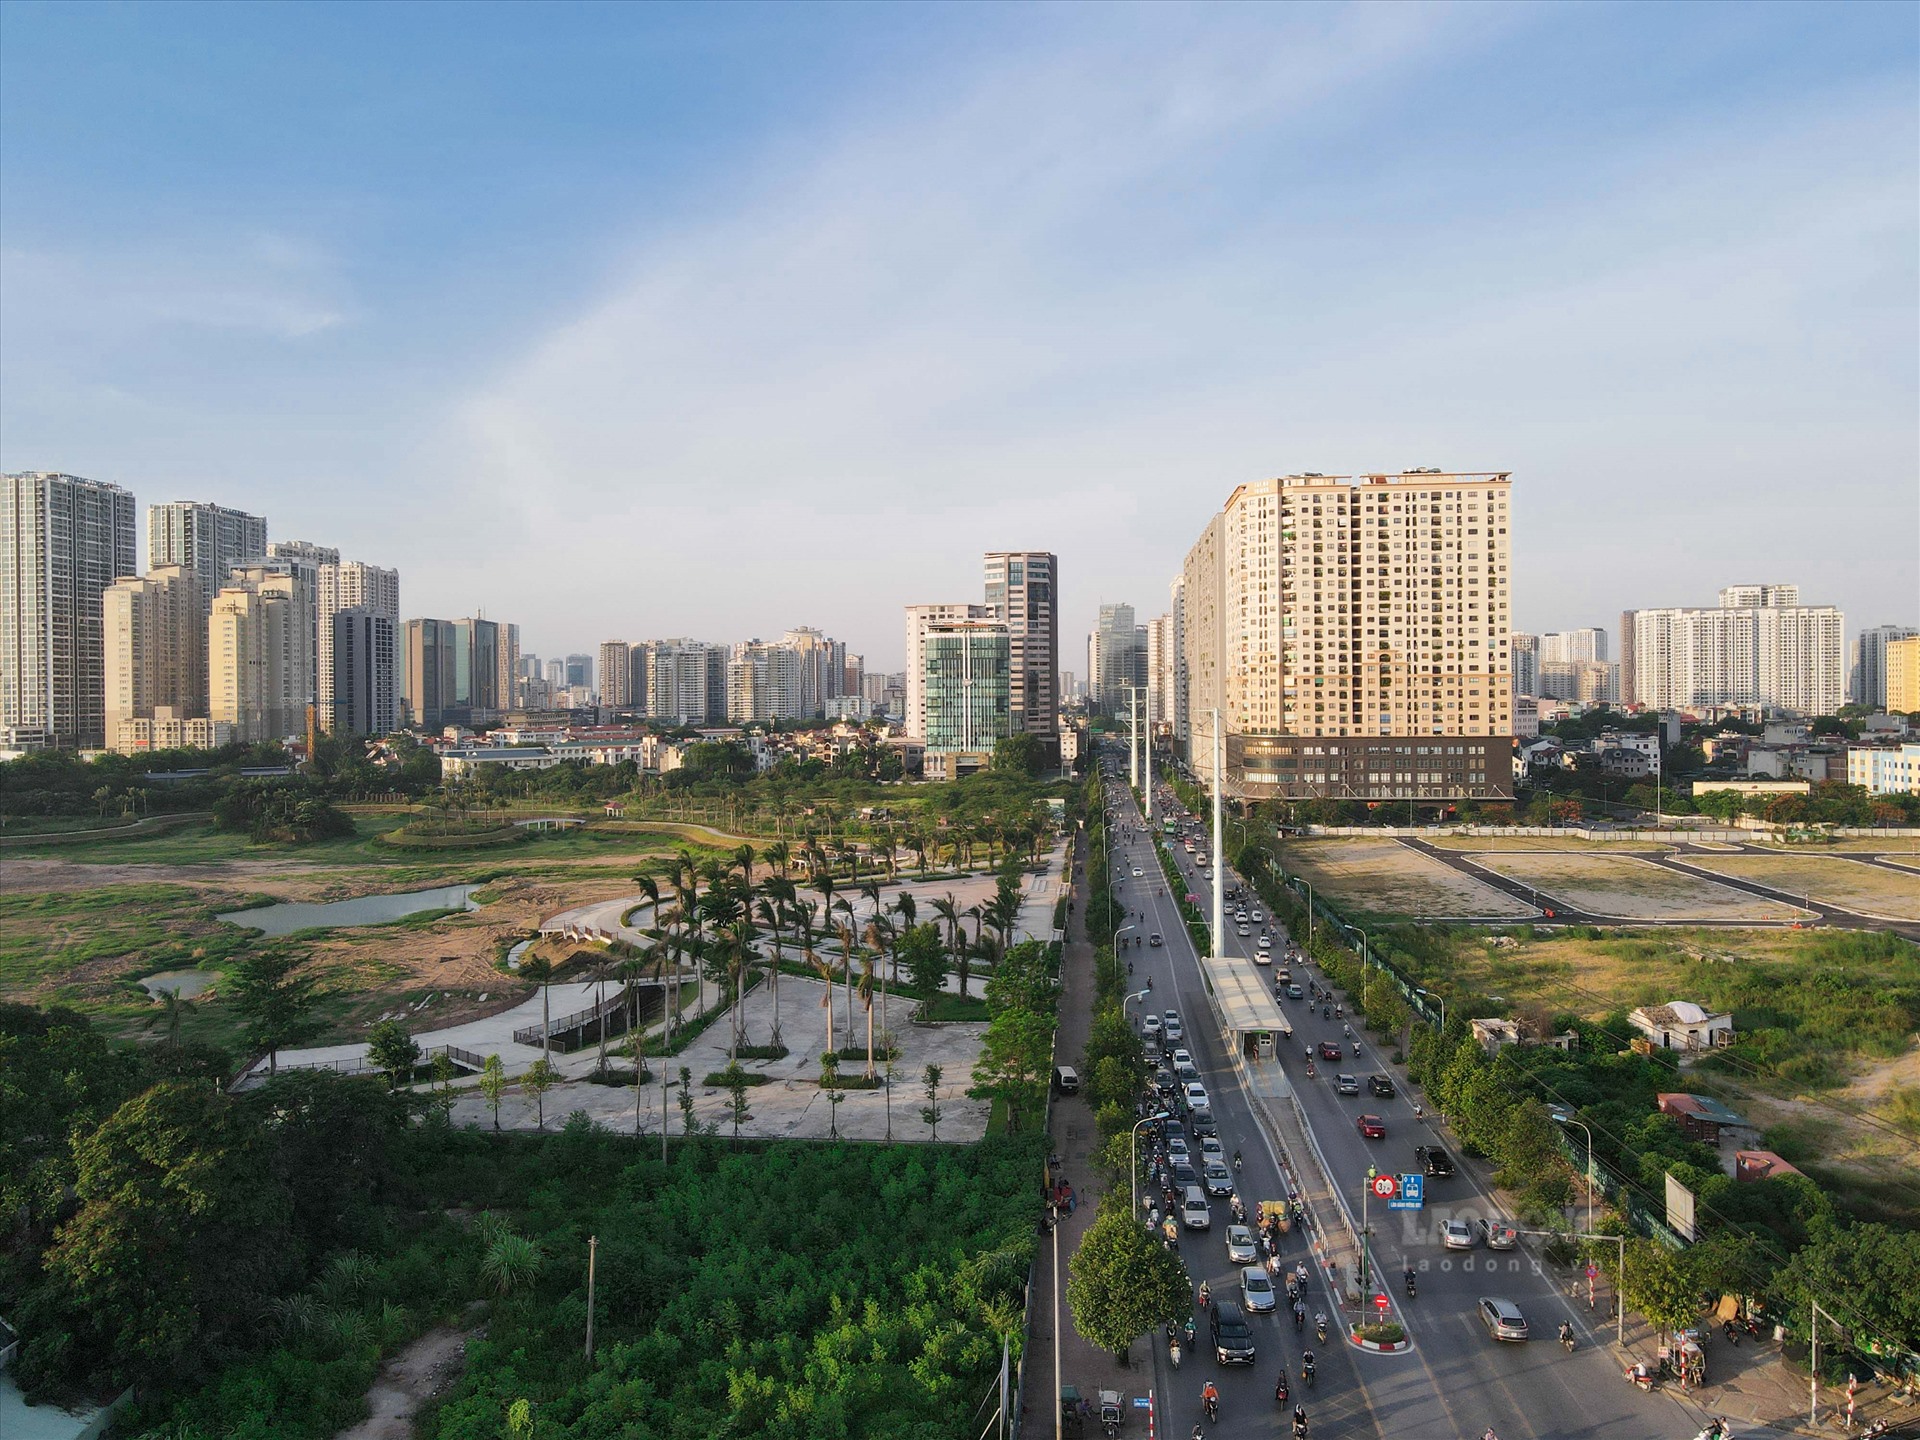 Sau 3 năm chậm tiến độ, hồ điều hòa Phùng Khoang vẫn chỉ là một khu đất ngổn ngang bên cạnh những khu đô thị hiện đại,các tòa chung cư cao cấp.